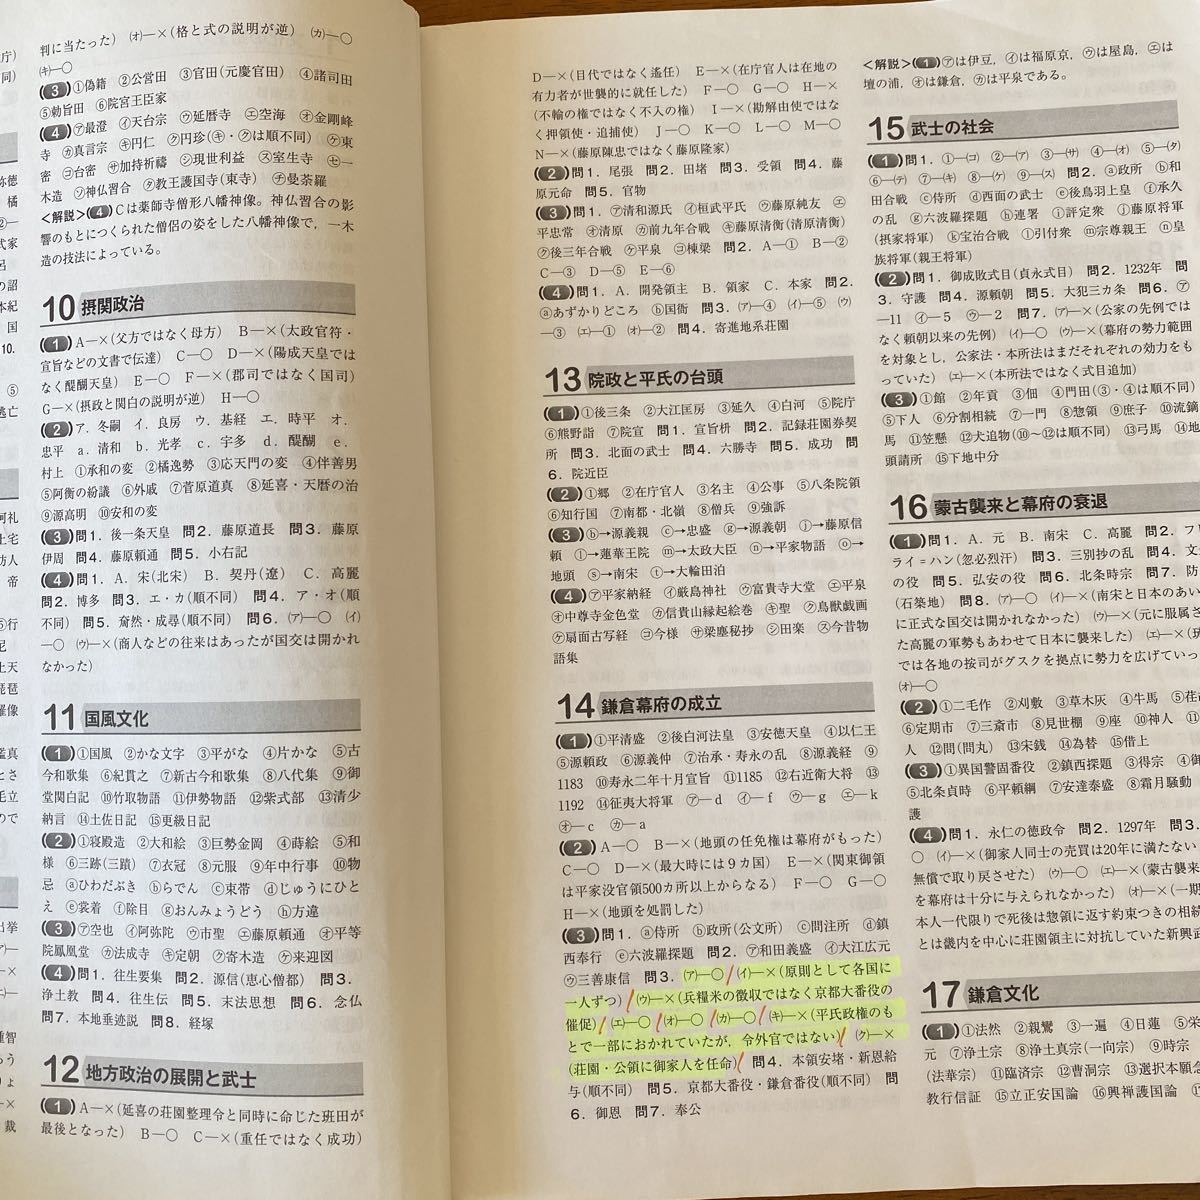 復習と演習 日本史テスト 改訂版 日本史B 詳説日本史改訂版(日B309